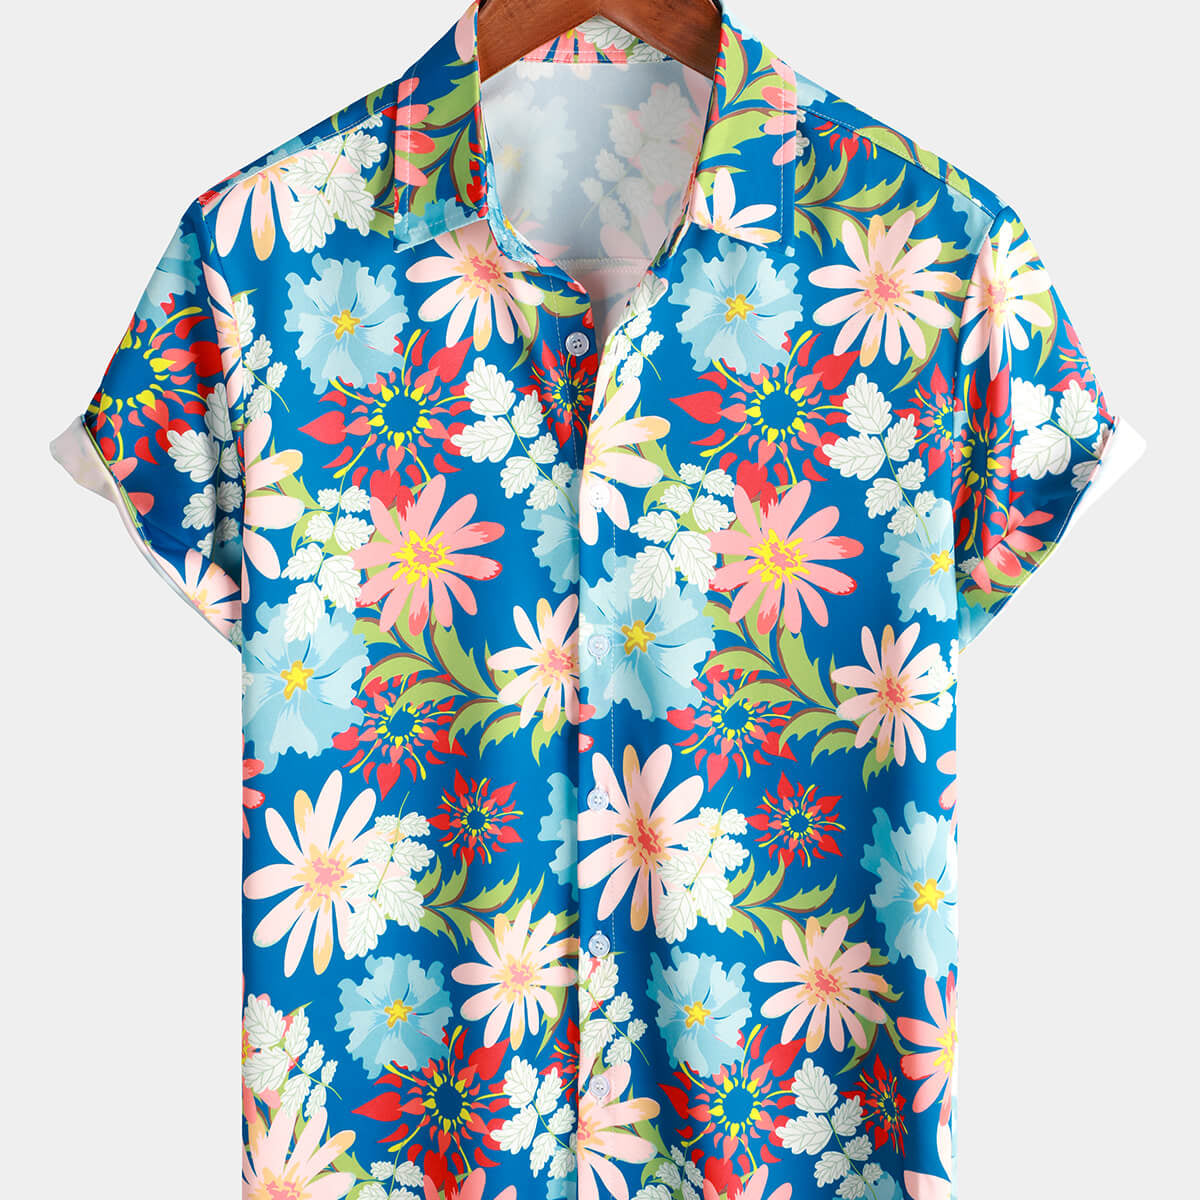 Men's Floral Tropical Blue Button Up Short Sleeve Beach Summer Hawaiian Shirt